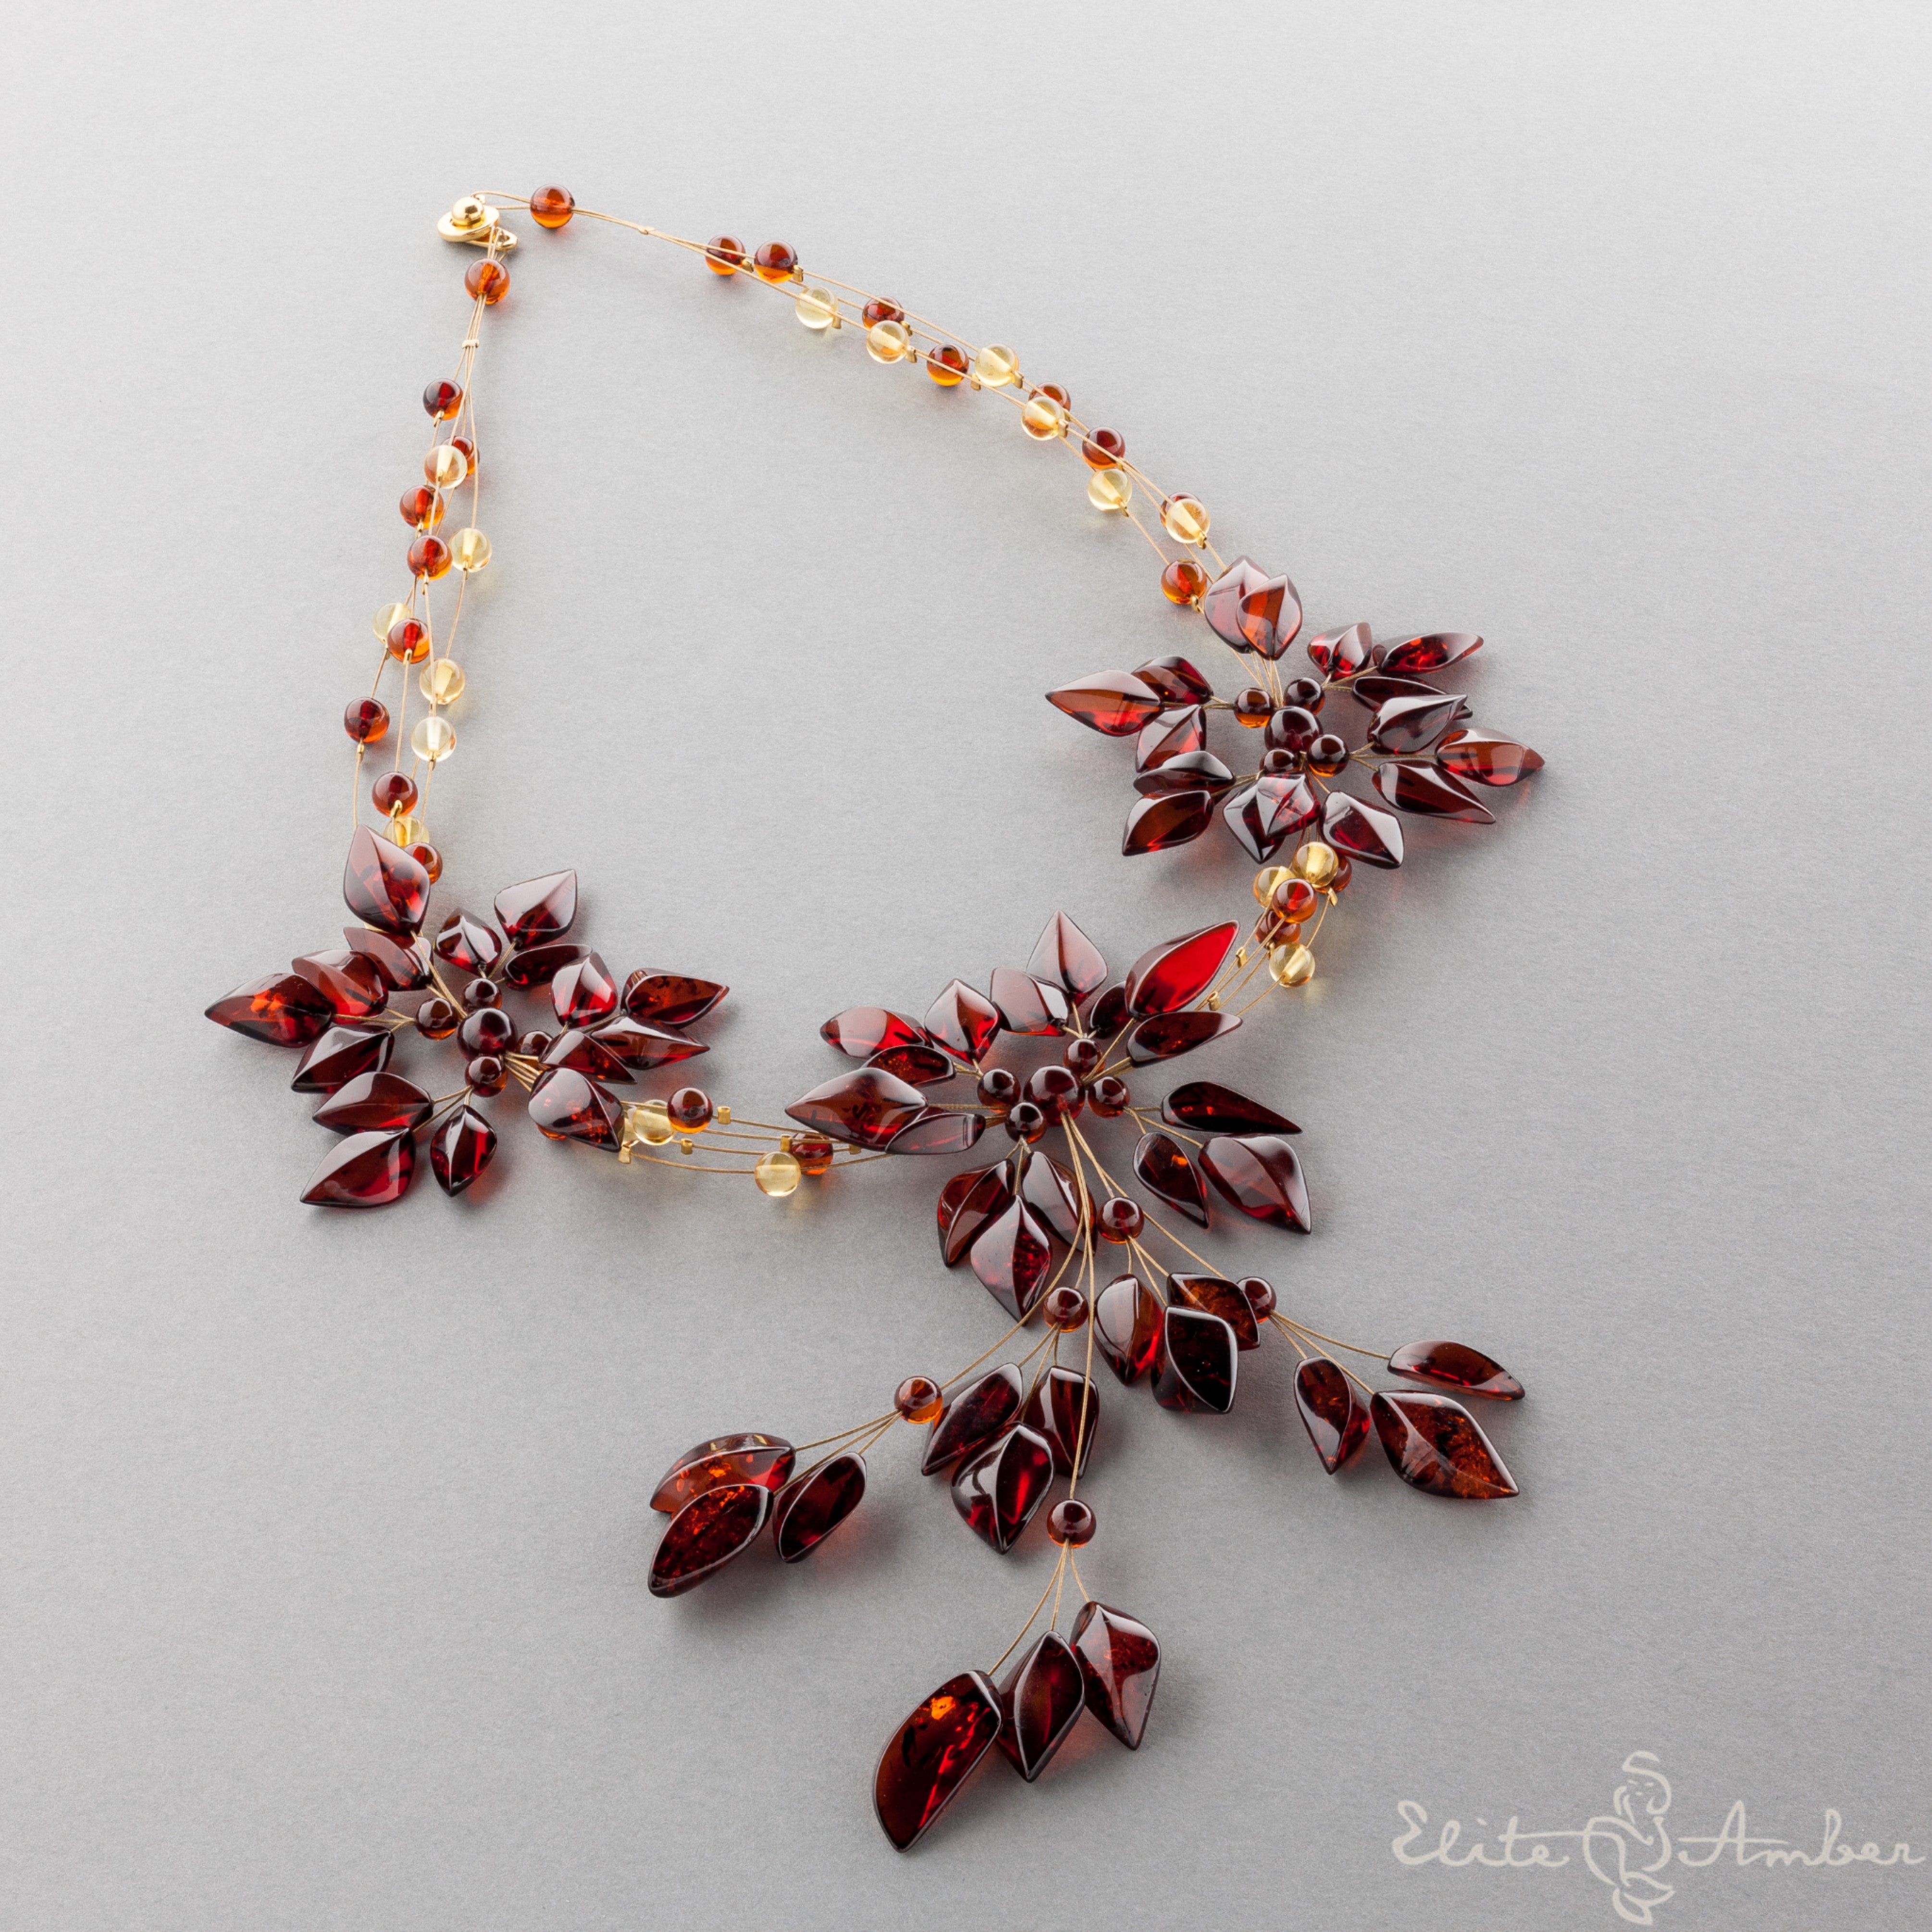 Amber necklace "Amazing honey flowers"